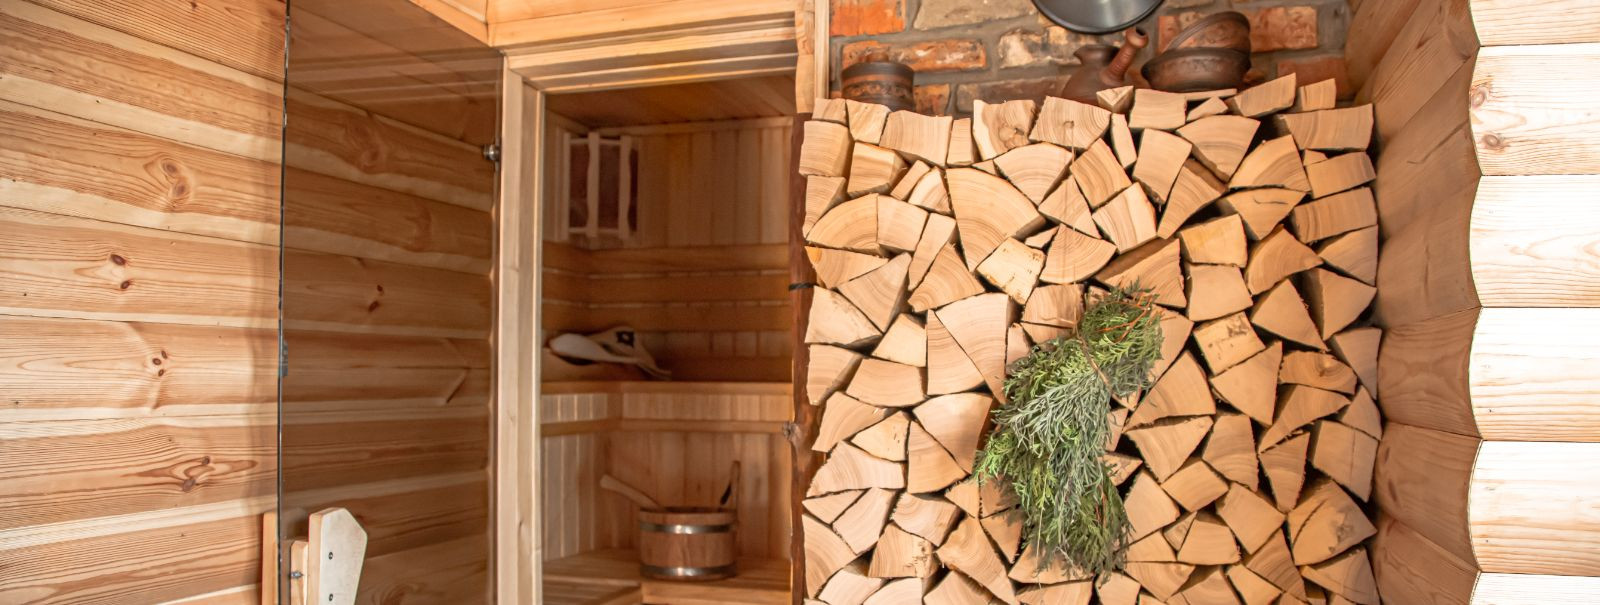 Elektrikerise saun on tüüpi saun, mis kasutab ruumi soojendamiseks elektrikerist, luues kuiva või niiske kuumuse keskkonna, kus inimesed saavad lõõgastuda ja hi